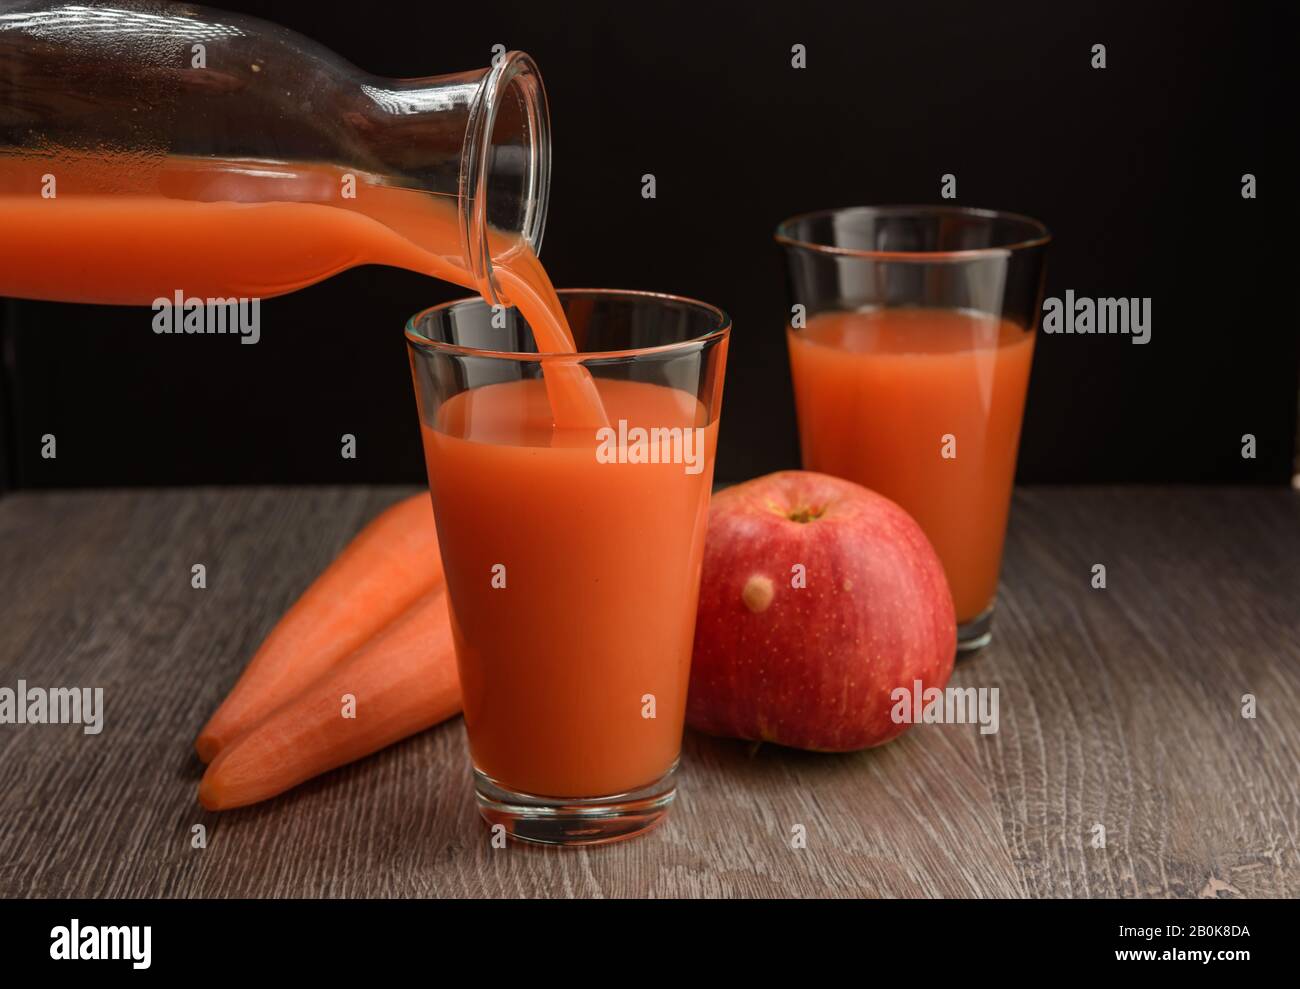 Le jus de pomme de carotte est versé de la bouteille dans un verre. Il y a des carottes et des pommes sur la table. Banque D'Images